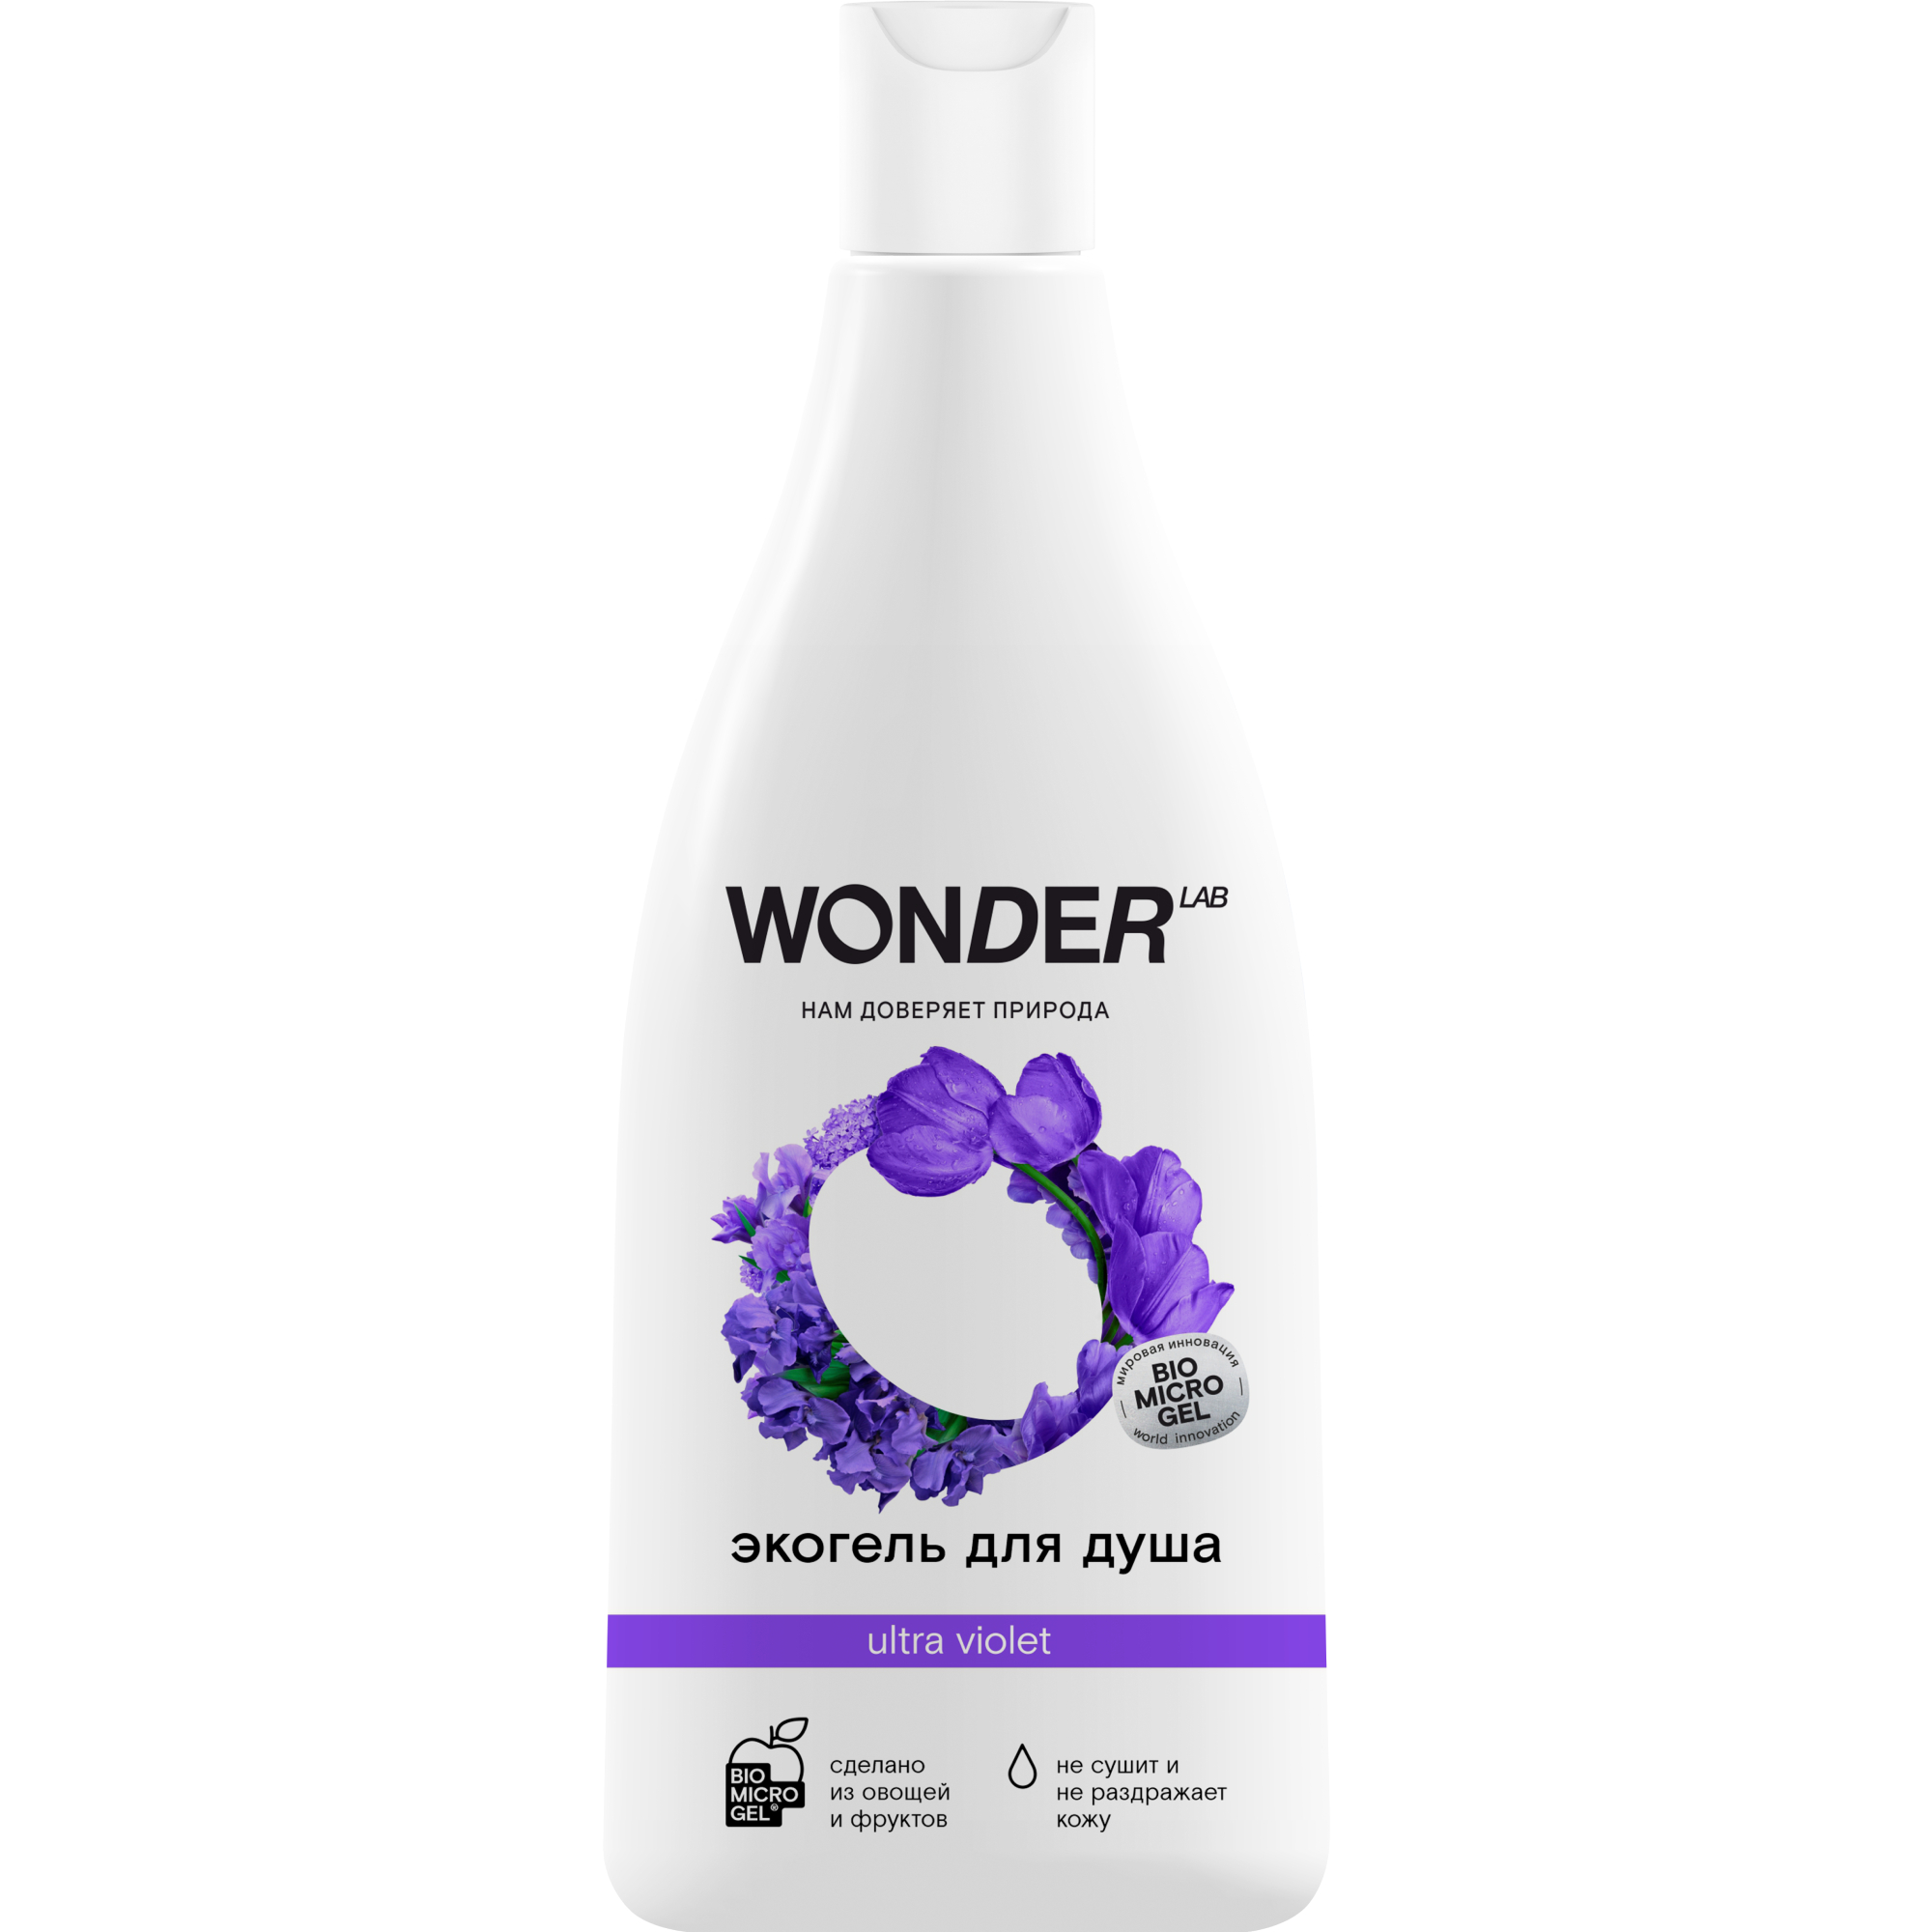 Гель для душа WONDER LAB ultra violet увлажняющий Полевые цветы 550 мл wonder lab детский экогель для душа 2 в 1 с ароматом озорной дыни 550